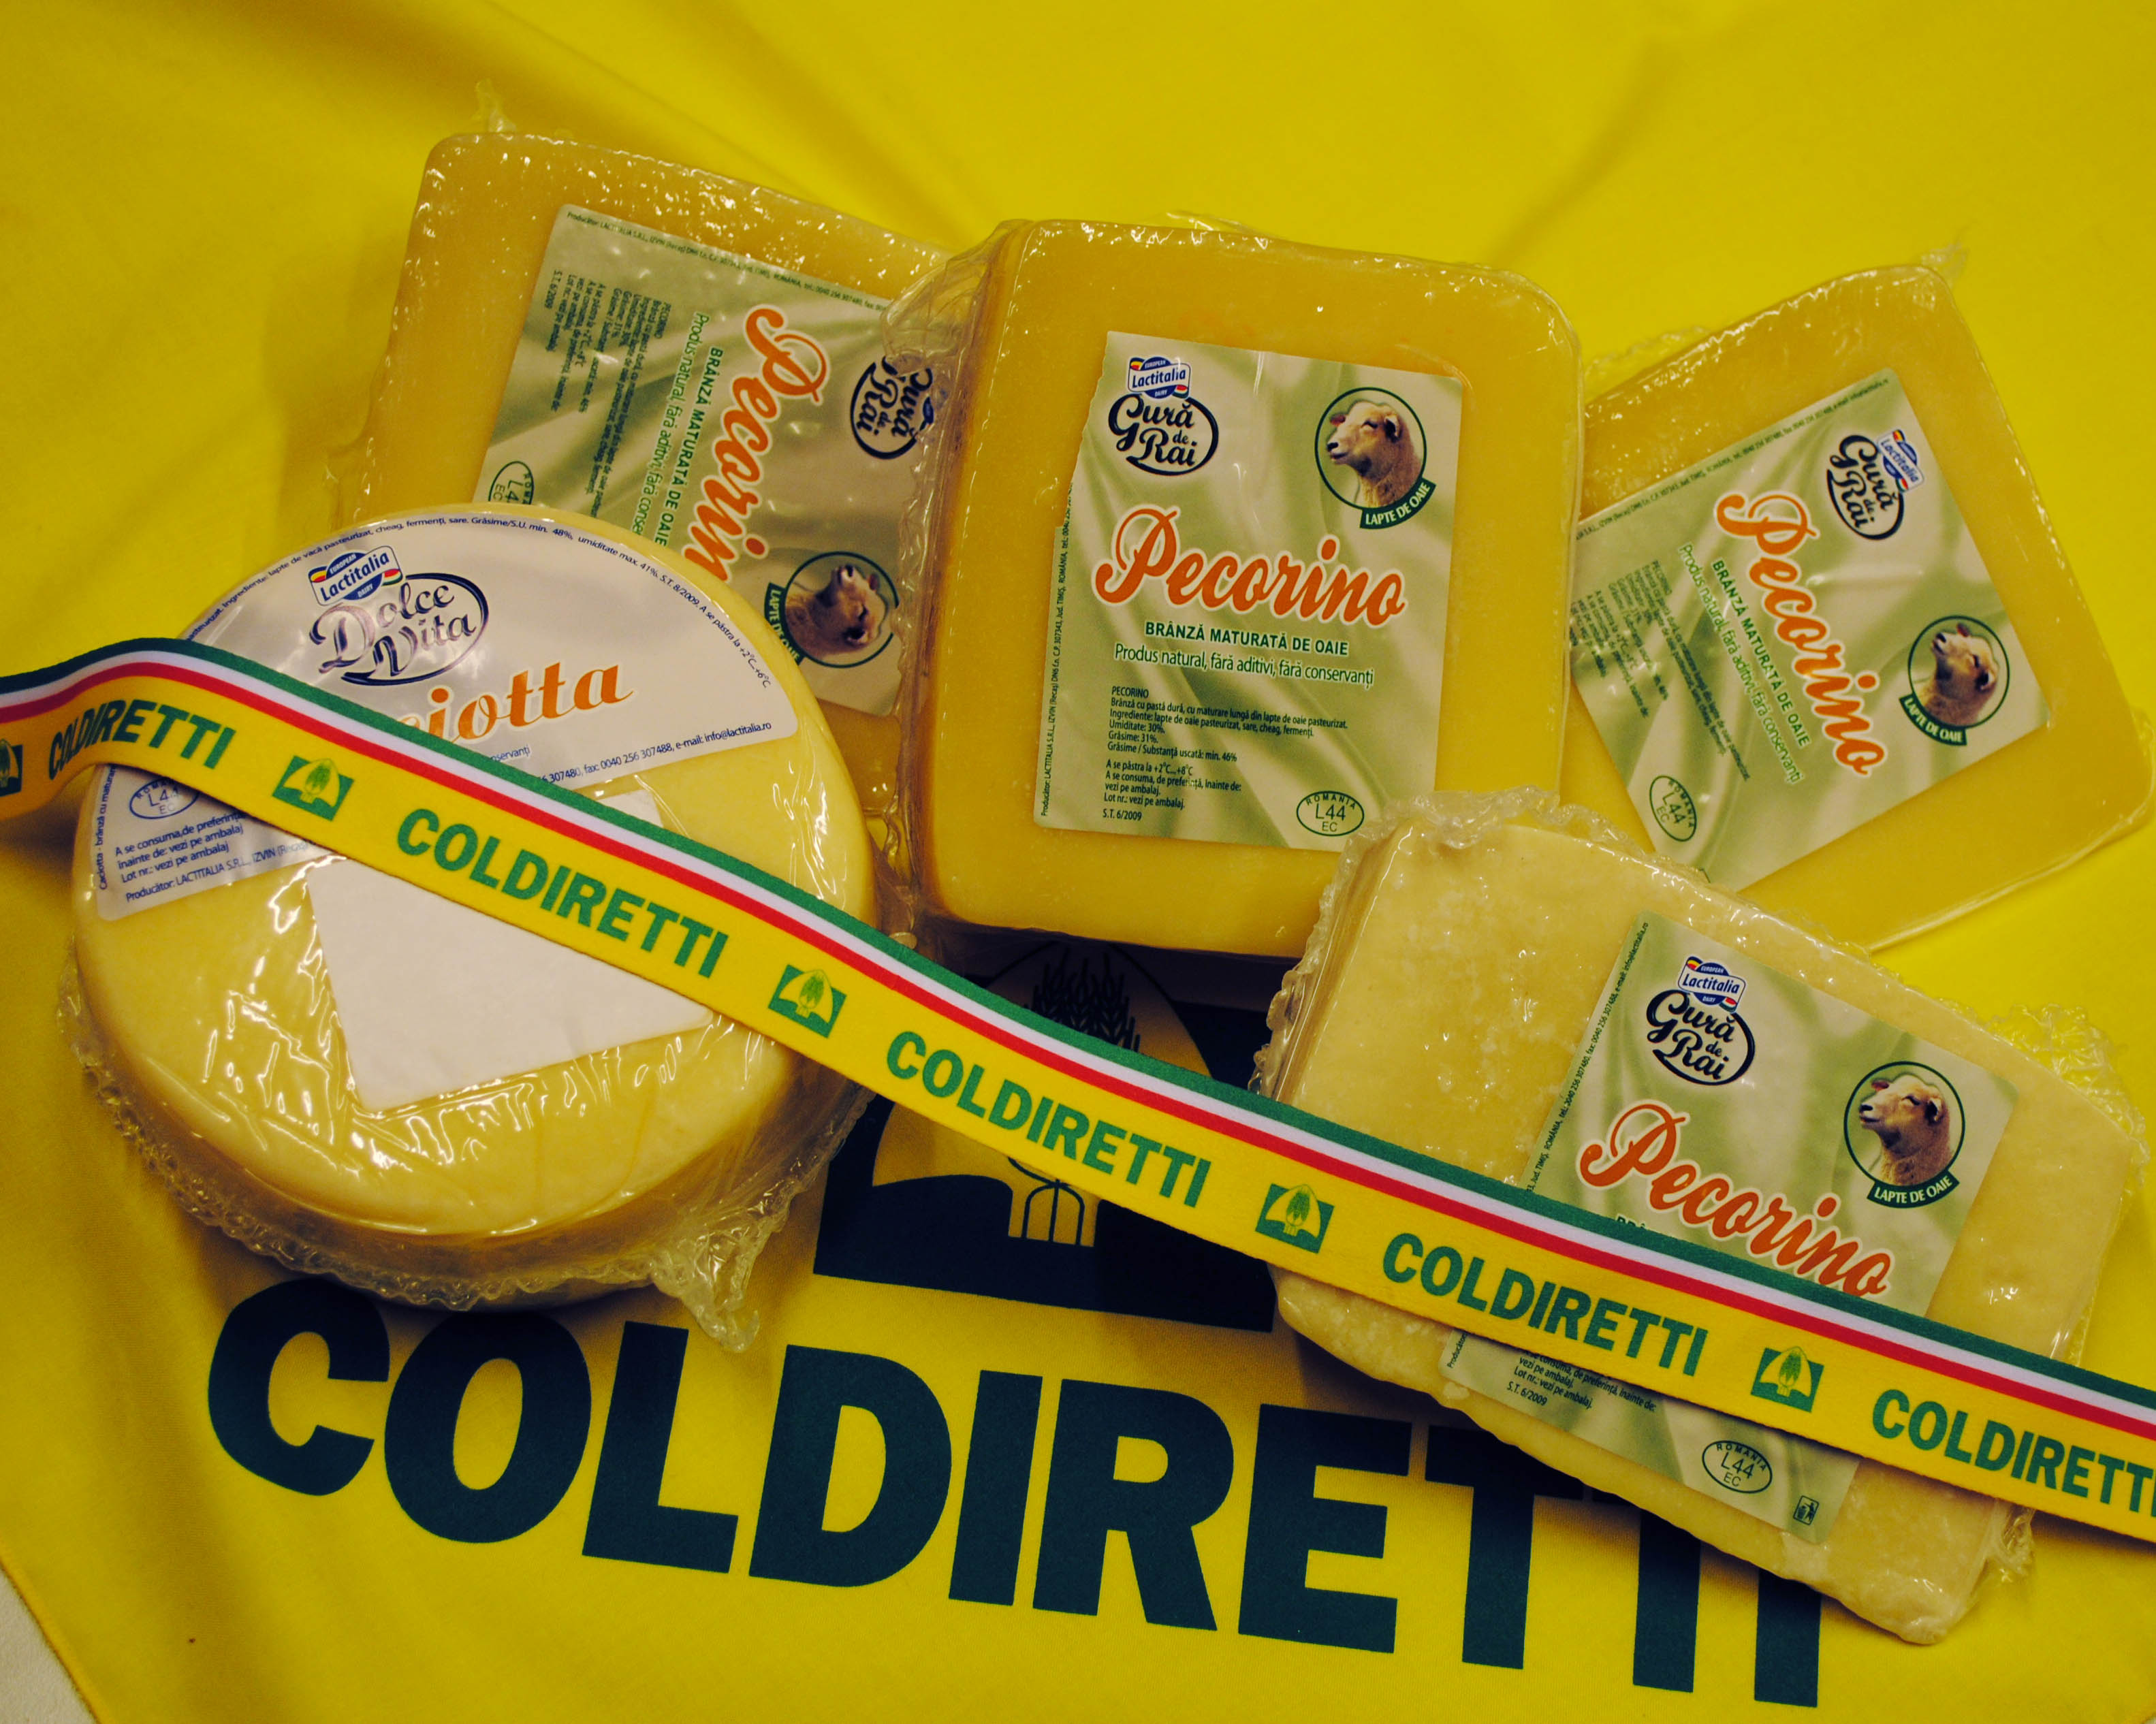  Expo, rapporto Coldiretti/Eurispes: allarme prodotti Made in Italy falsificati